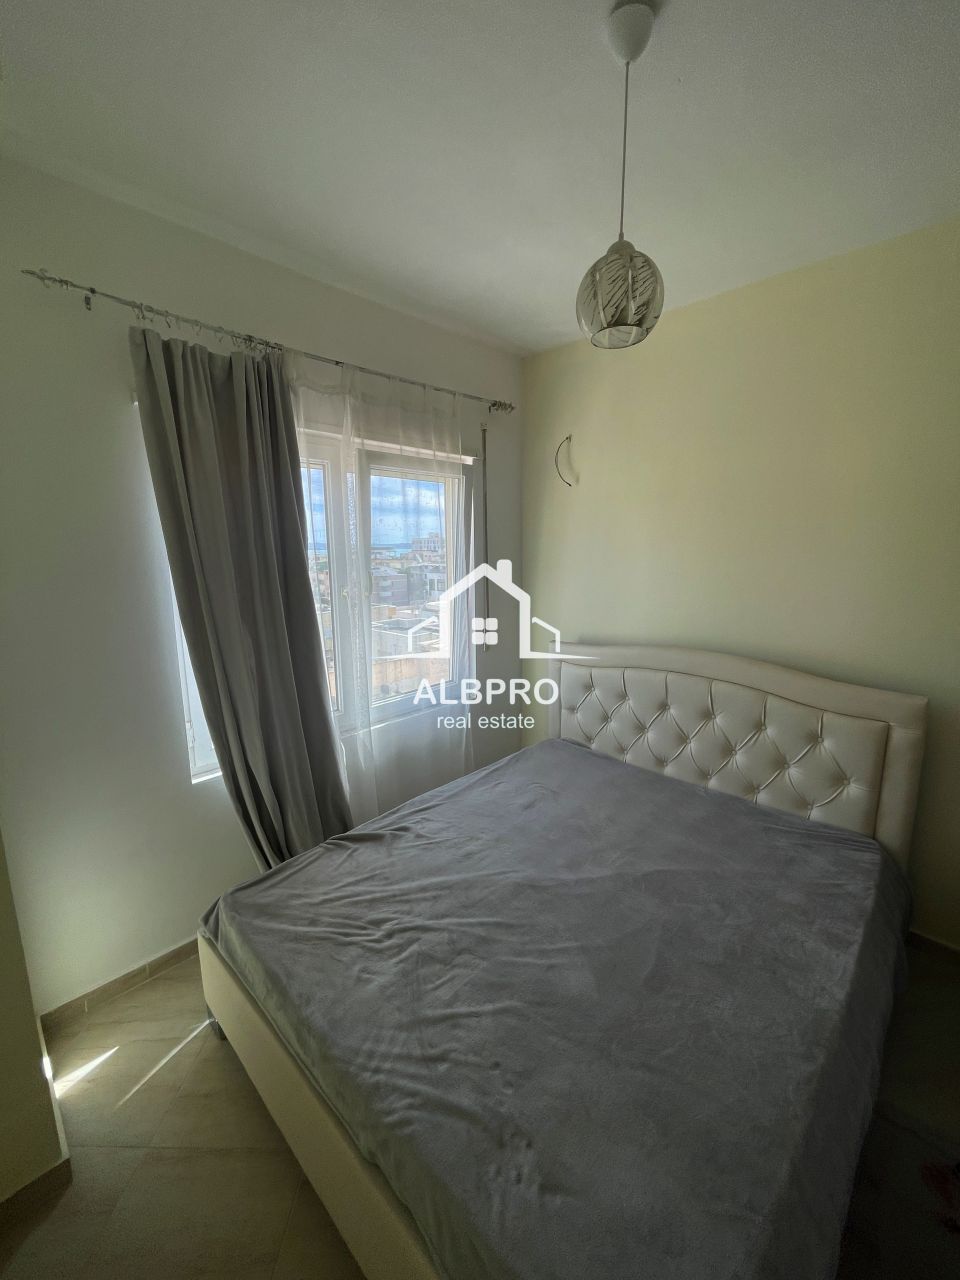 Apartment in Durres, Albanien, 44 m2 - Foto 1